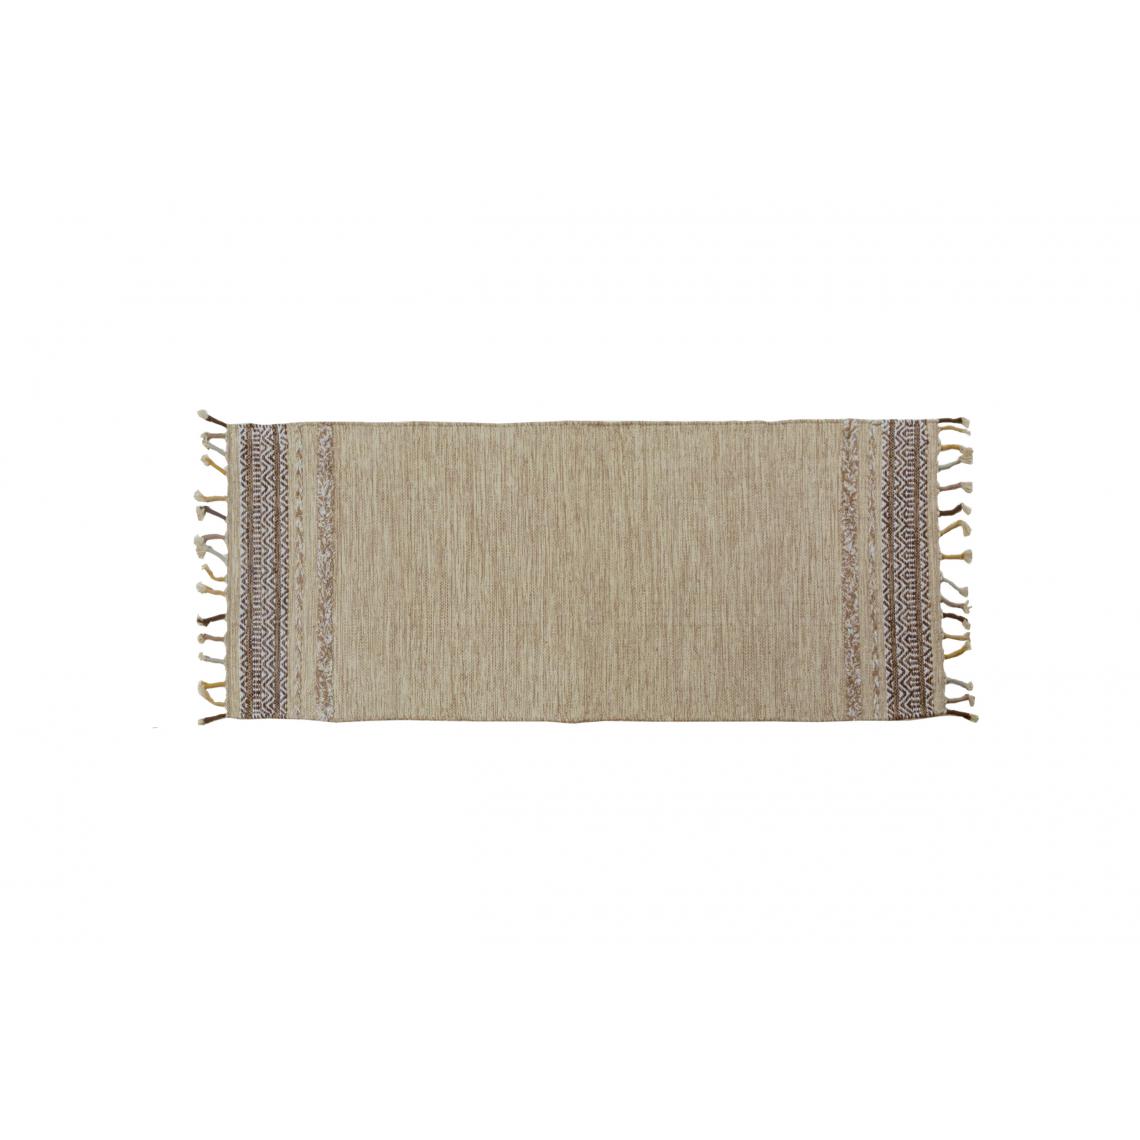 Alter - Tapis boston moderne, style kilim, 100% coton, beige, 180x60cm - Tapis